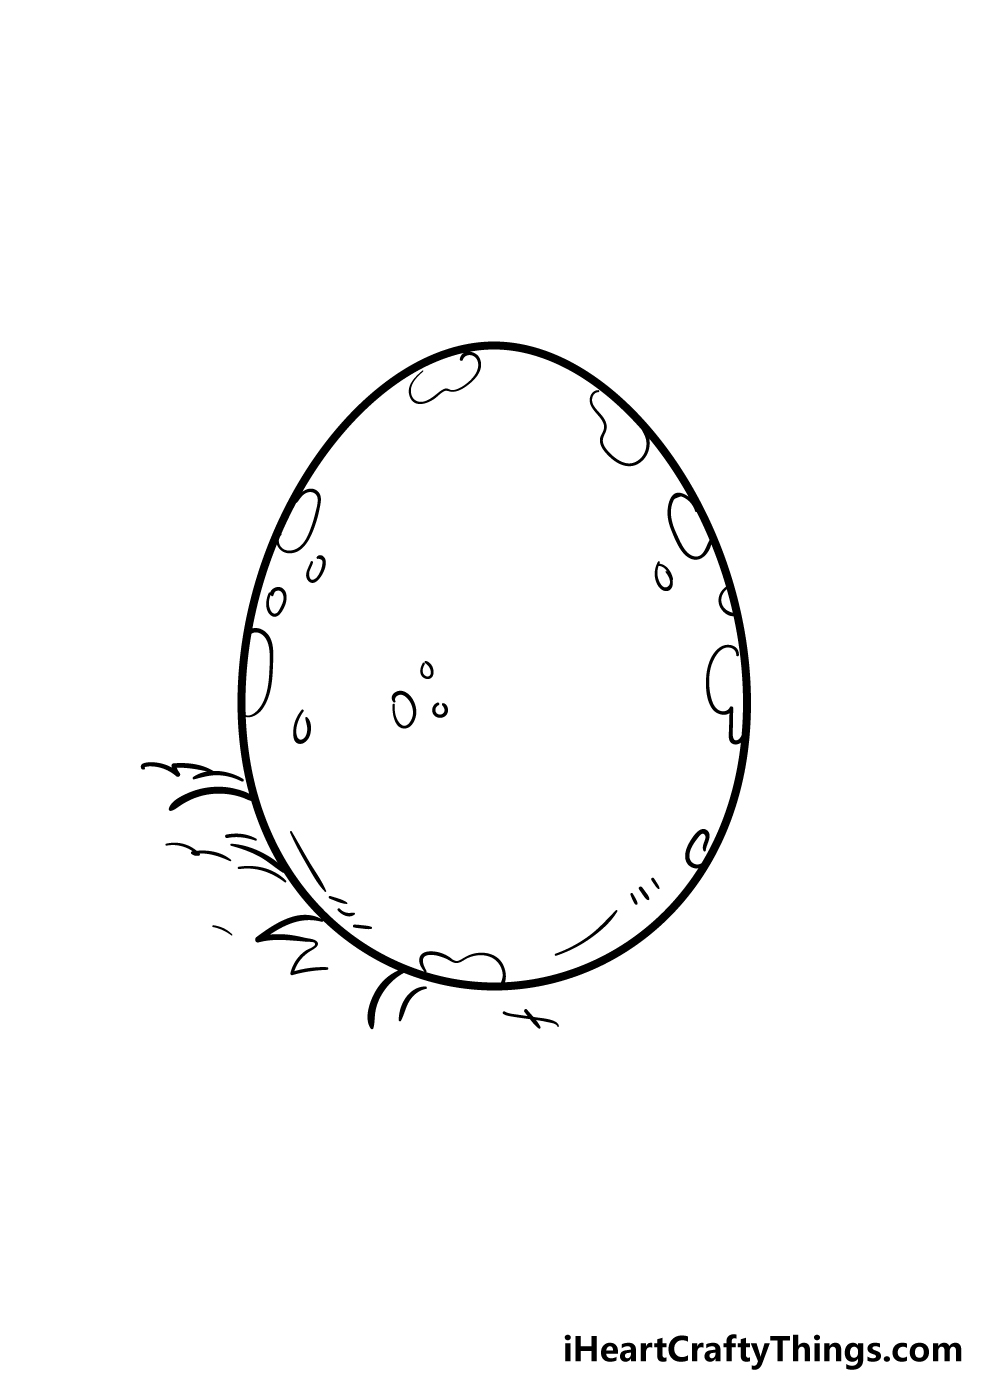 5 4 - Hướng dẫn cách vẽ quả trứng đơn giản và giản dị với 7 bước cơ bản